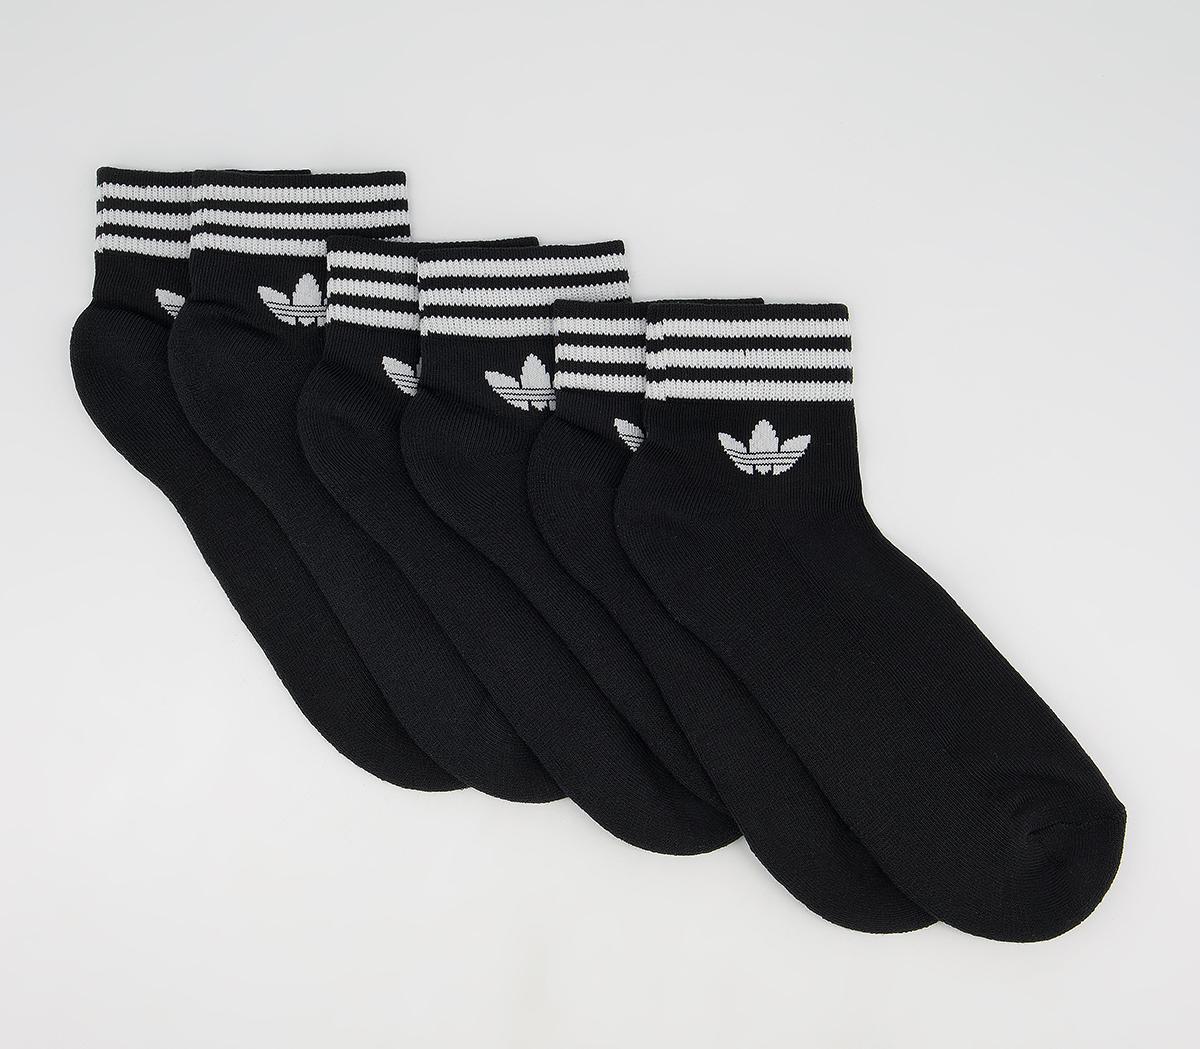 Adidas Trefoil Ankle Socks 3 Pack Black, 12.5-2